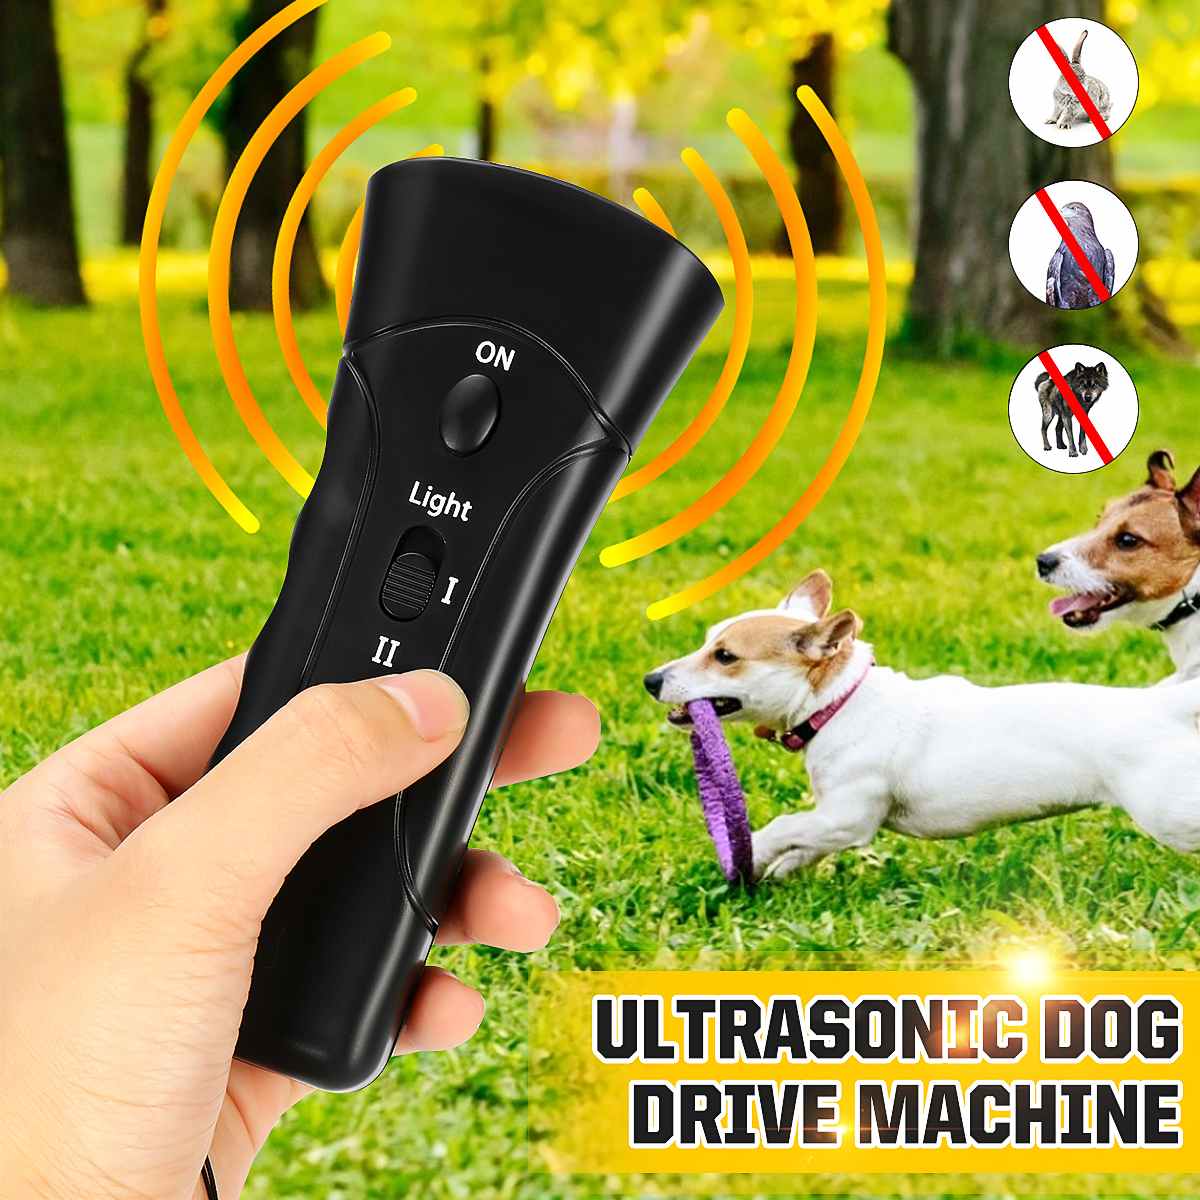 25HZ Ultraschall Hund Verfolger aggressiv Angriff Hunde Repeller Haustiere Trainer LED Taschenlampe Nützliche Stopp Borke Hund Ausbildung Werkzeug